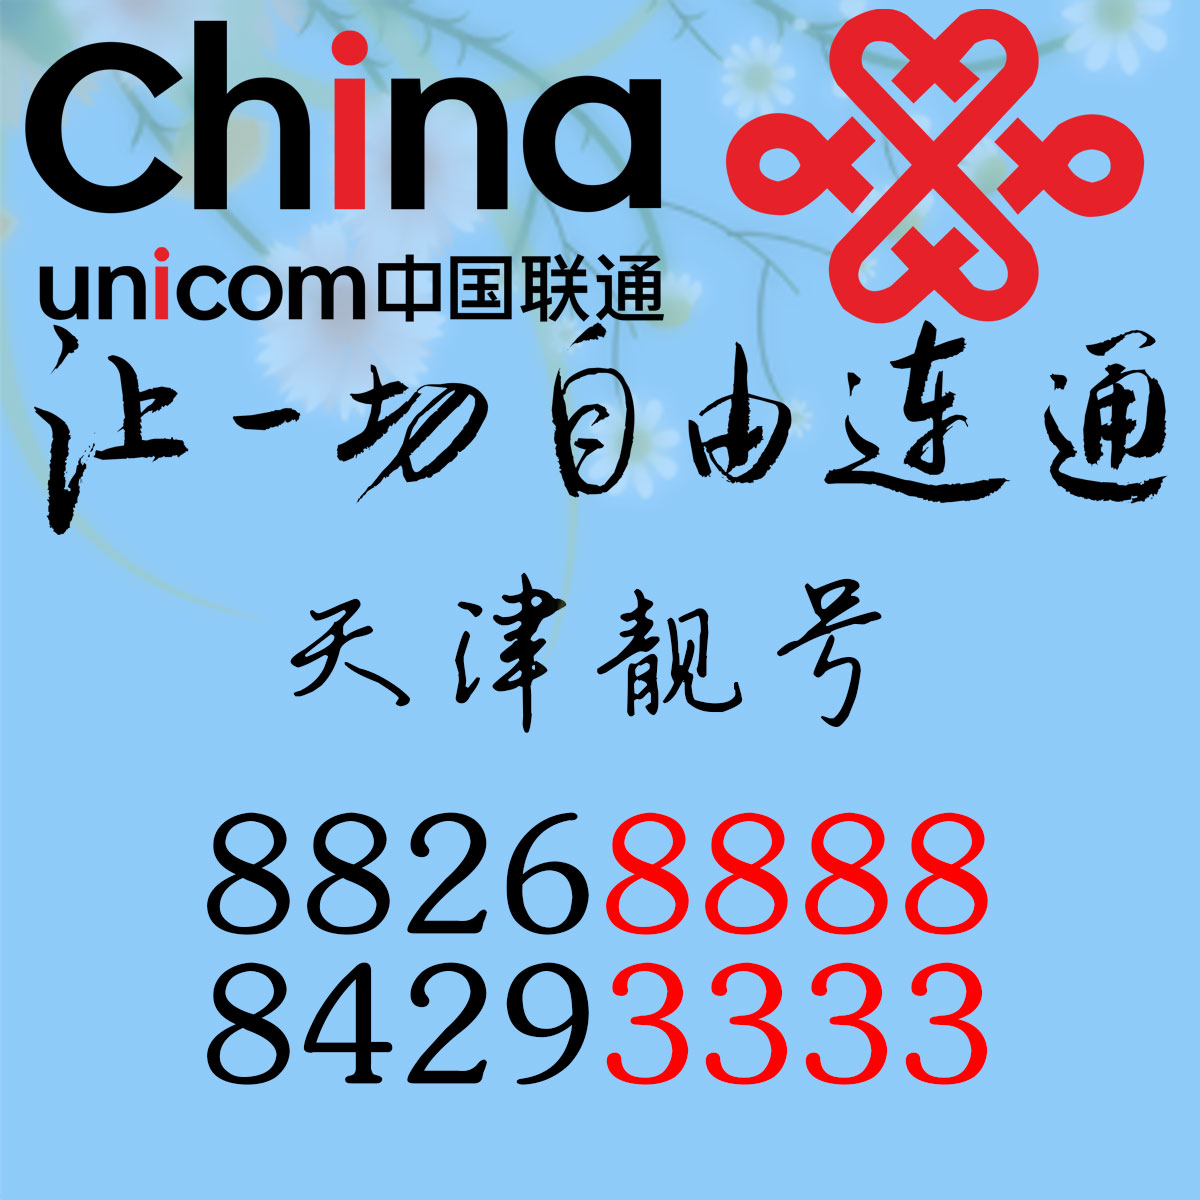 中国联通固定电话号码 AAAA 靓号84293333低